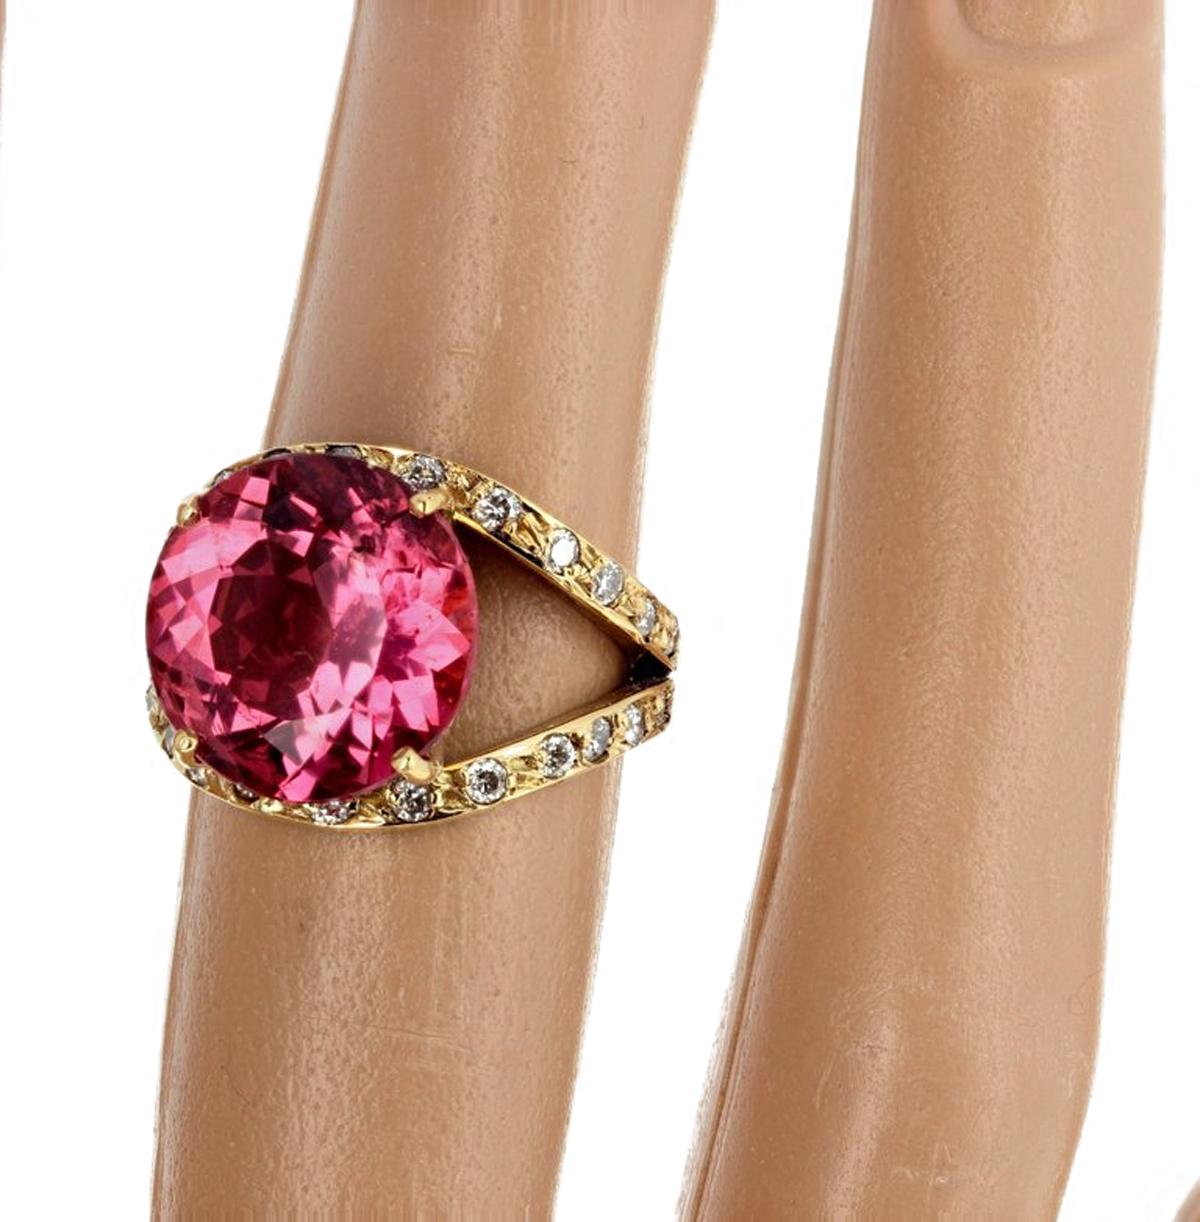 Einzigartige Brilliant glitzernden natürlichen rosa 12,7 mm runden Turmalin (8,36 Karat) mit etwa einem Karat funkelnden weißen Diamanten in einem handgefertigten 18Kt Gelbgold Ring Größe 6 (sizable für frei) gesetzt verbessert.  Es gibt KEINE für